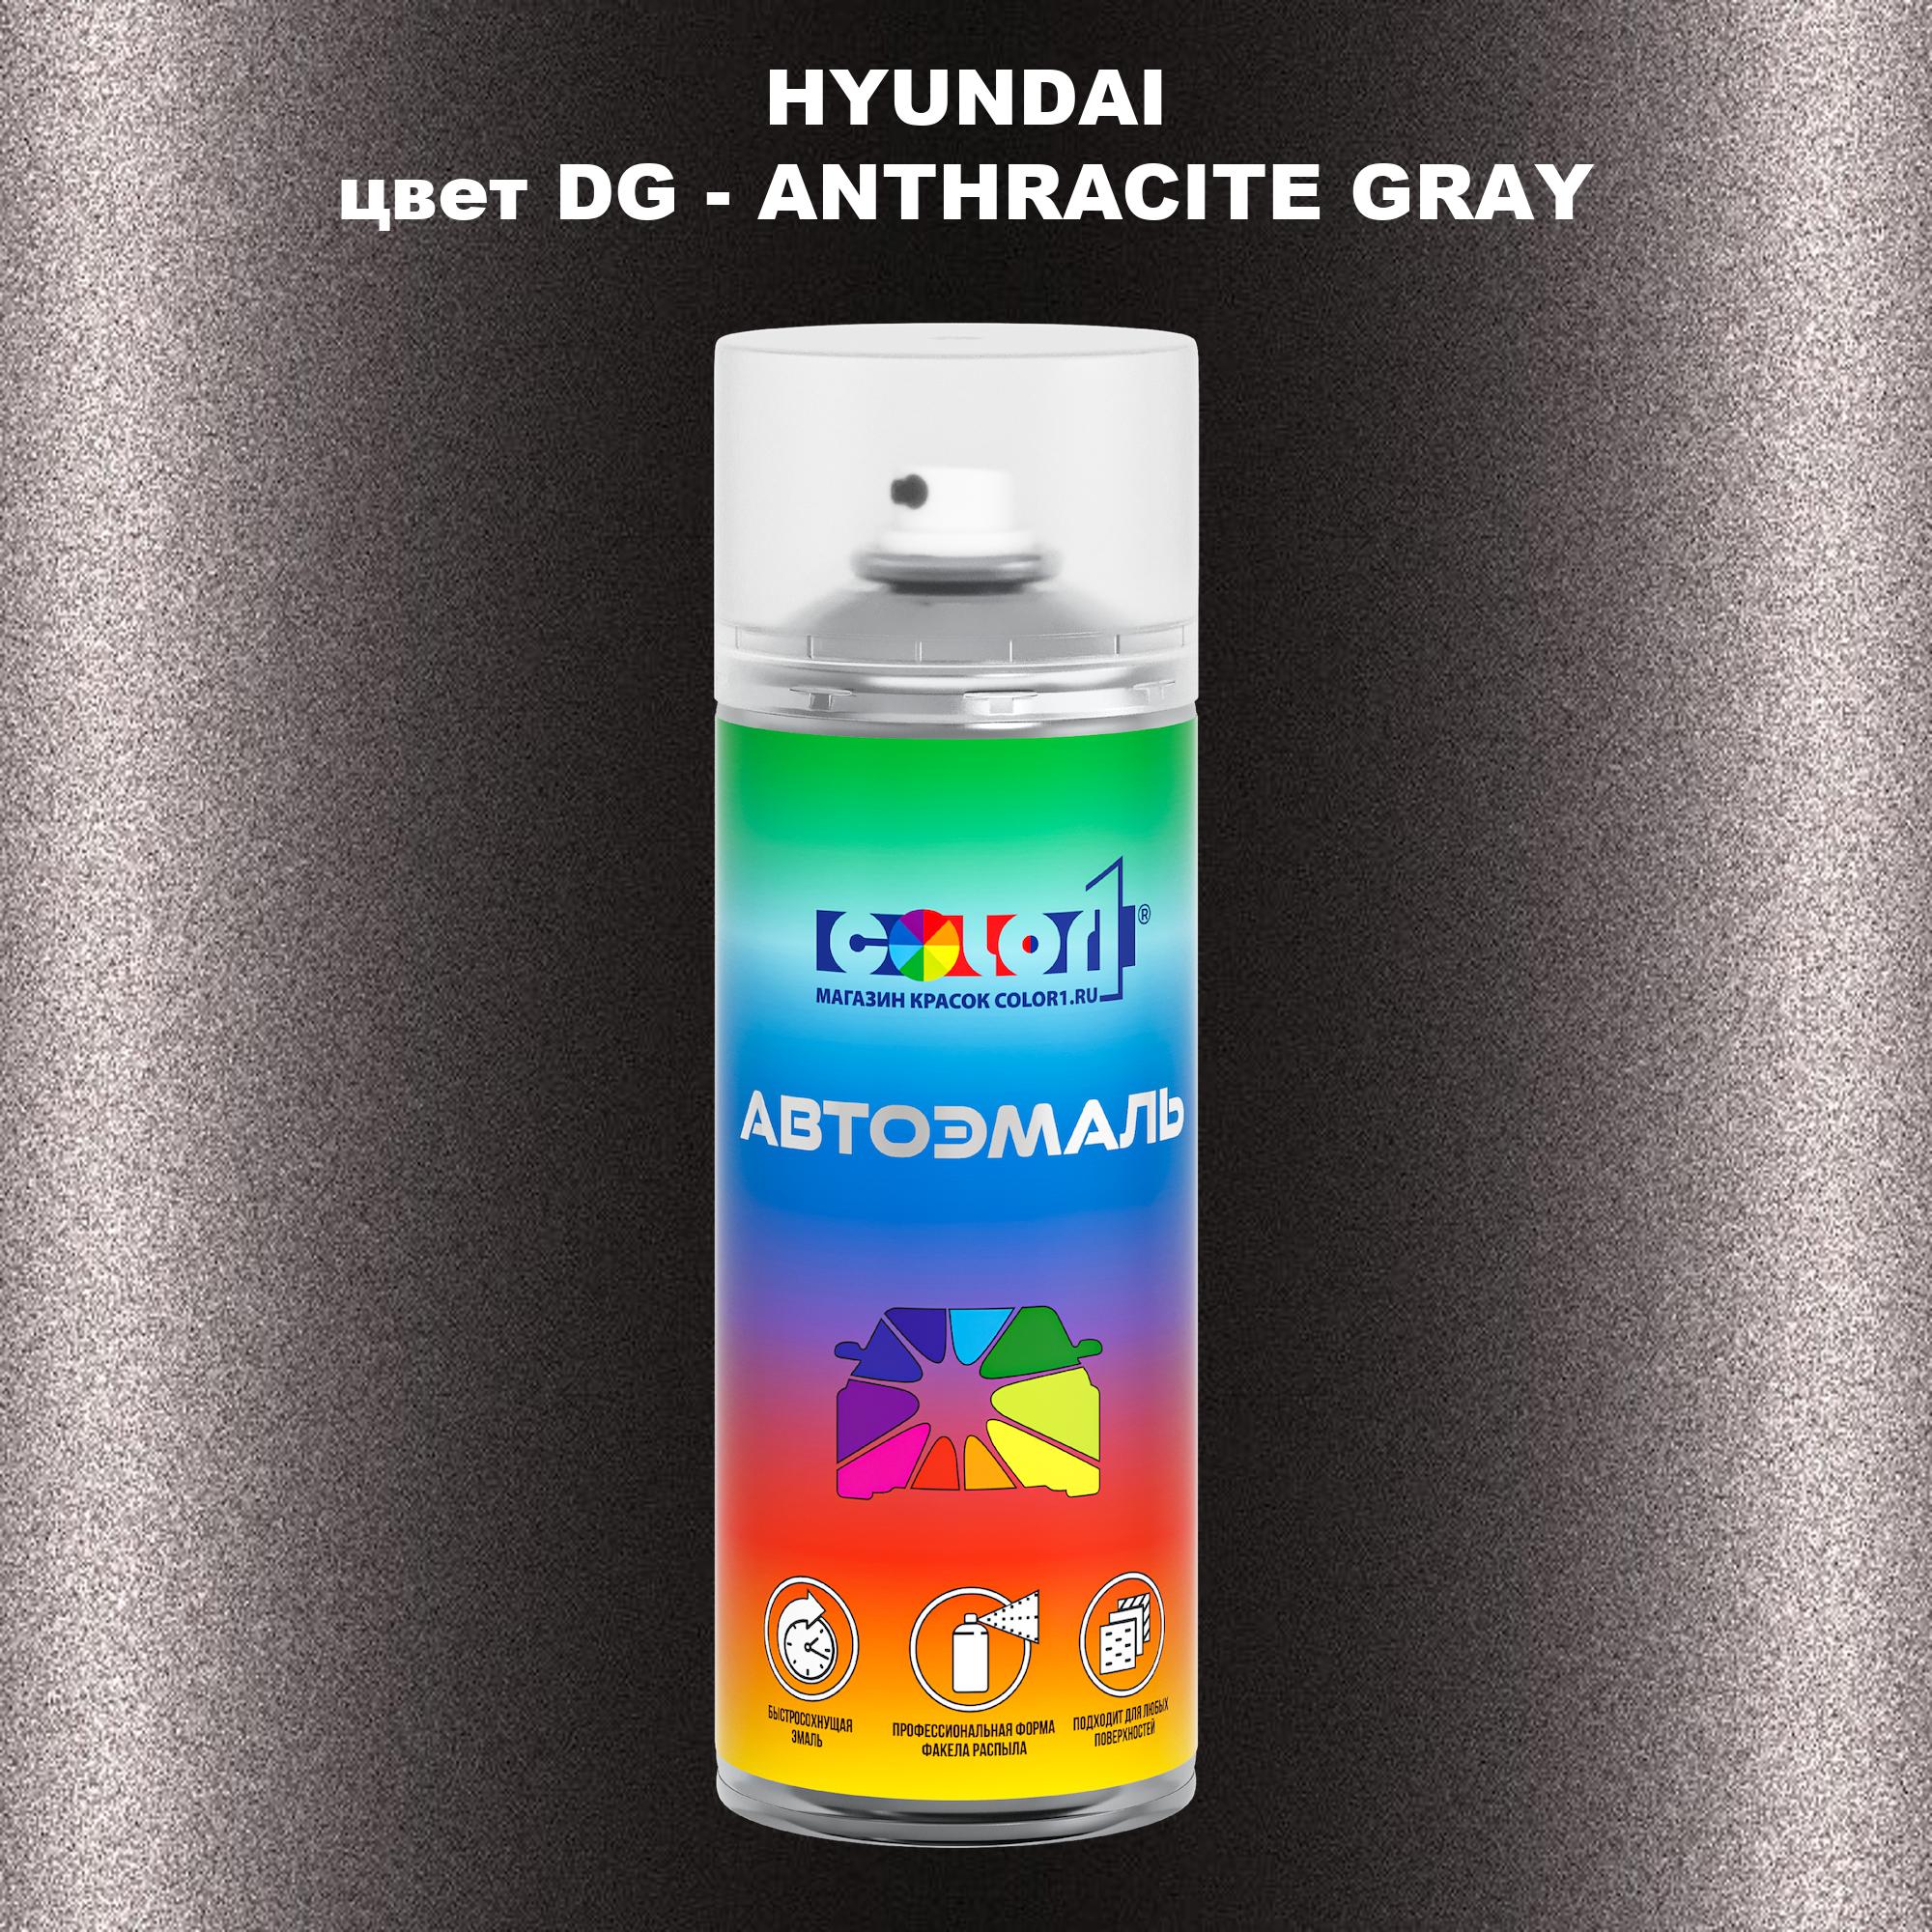 

Аэрозольная краска COLOR1 для HYUNDAI, цвет DG - ANTHRACITE GRAY, Прозрачный